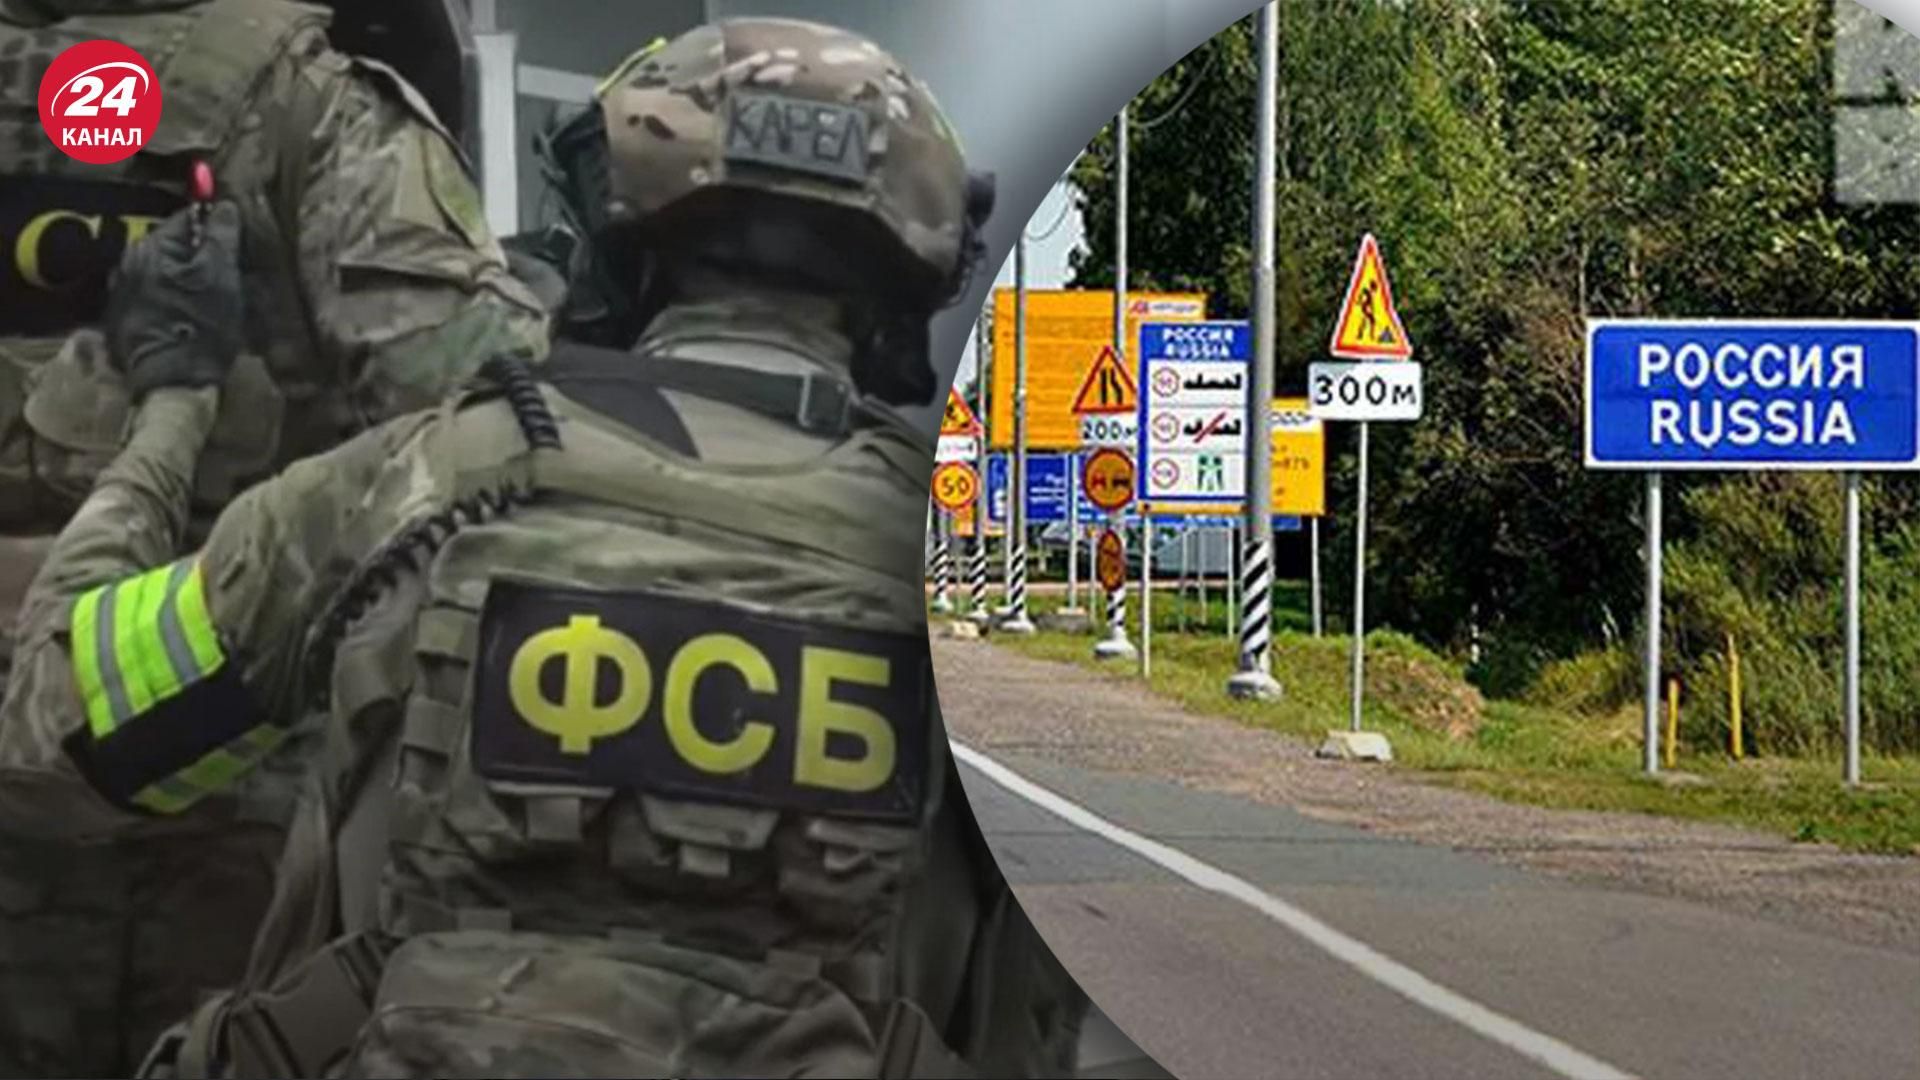 Пограничники ФСБ усиленно охраняют границу в Брянской и Курской областях России